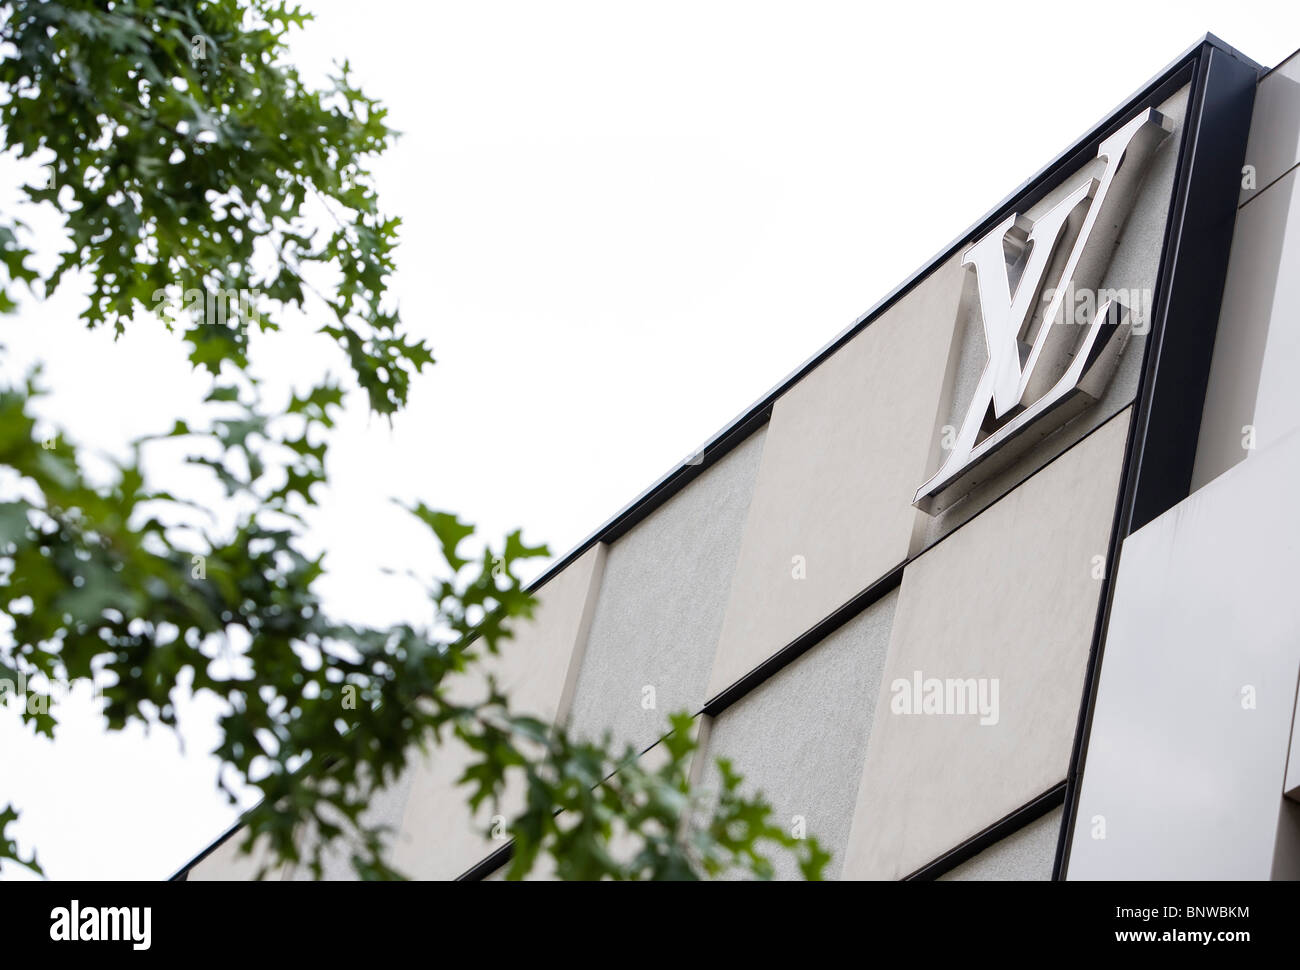 A Louis Vuitton retail store. Stock Photo